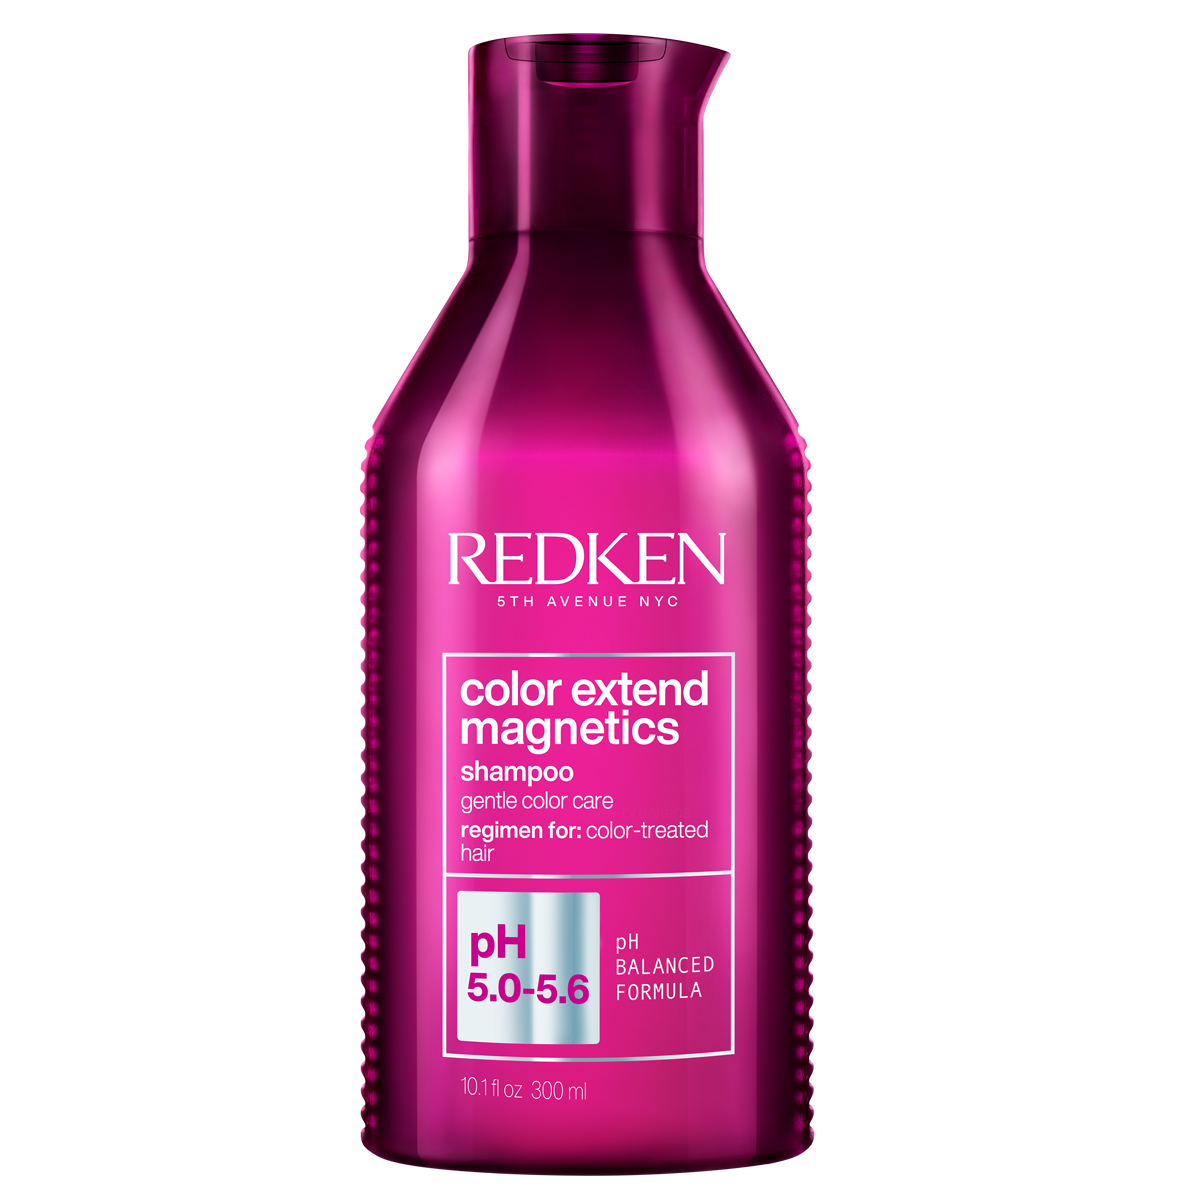 Купить Redken Шампунь для окрашенных волос, 300 мл (Redken, Уход за волосами), США